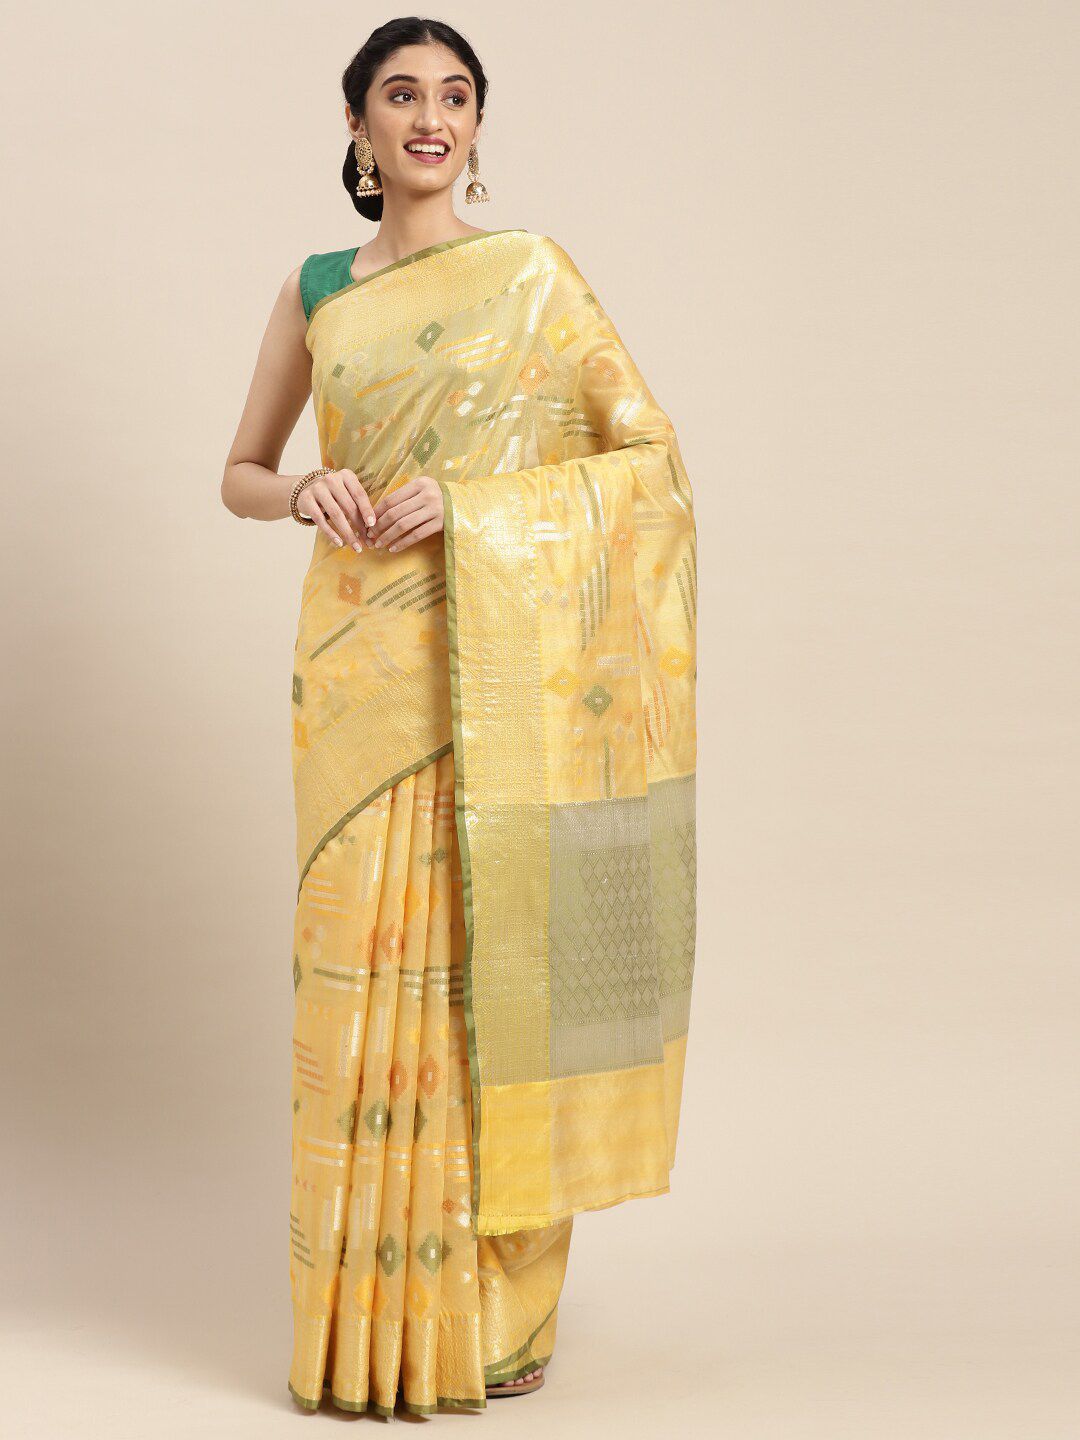 PTIEPL Banarasi Silk Works Yellow & Gold-Toned Woven Design Zari Silk Blend Banarasi Saree Price in India